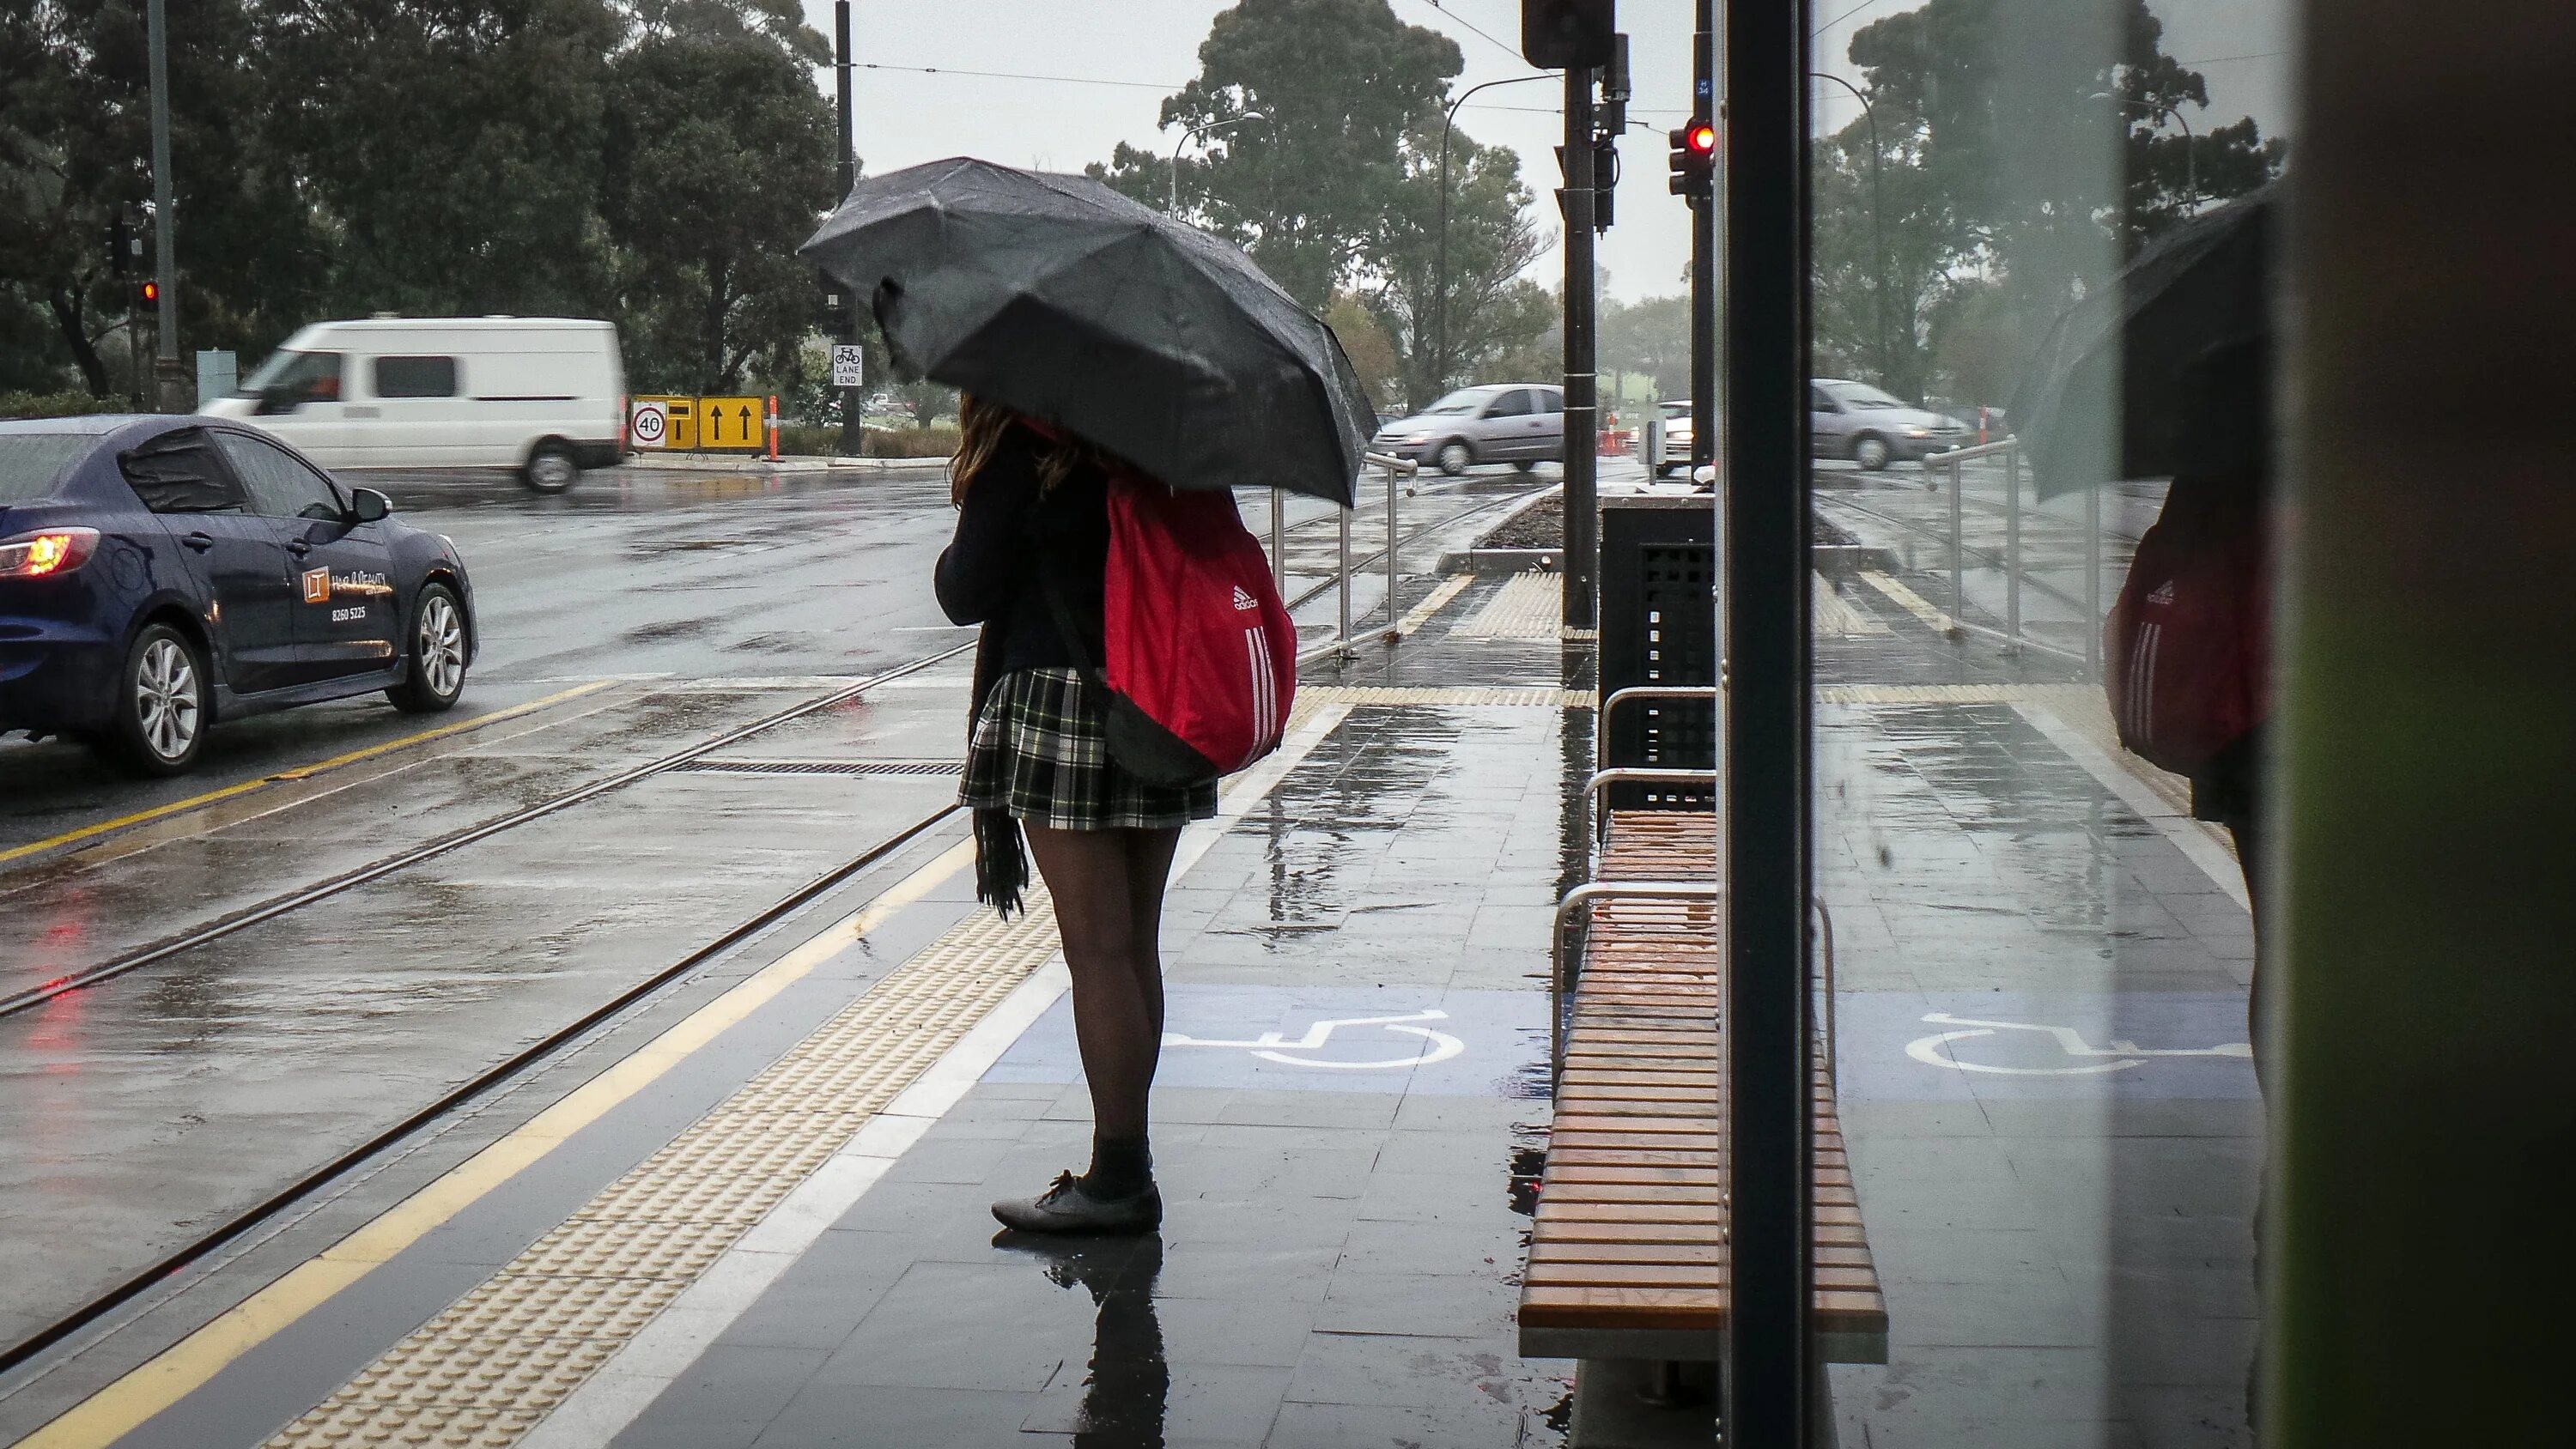 Остановка женщина. Люди на остановке с зонтами. Девушка на остановке. Автобусная остановка с людьми. Дождь без перерыва